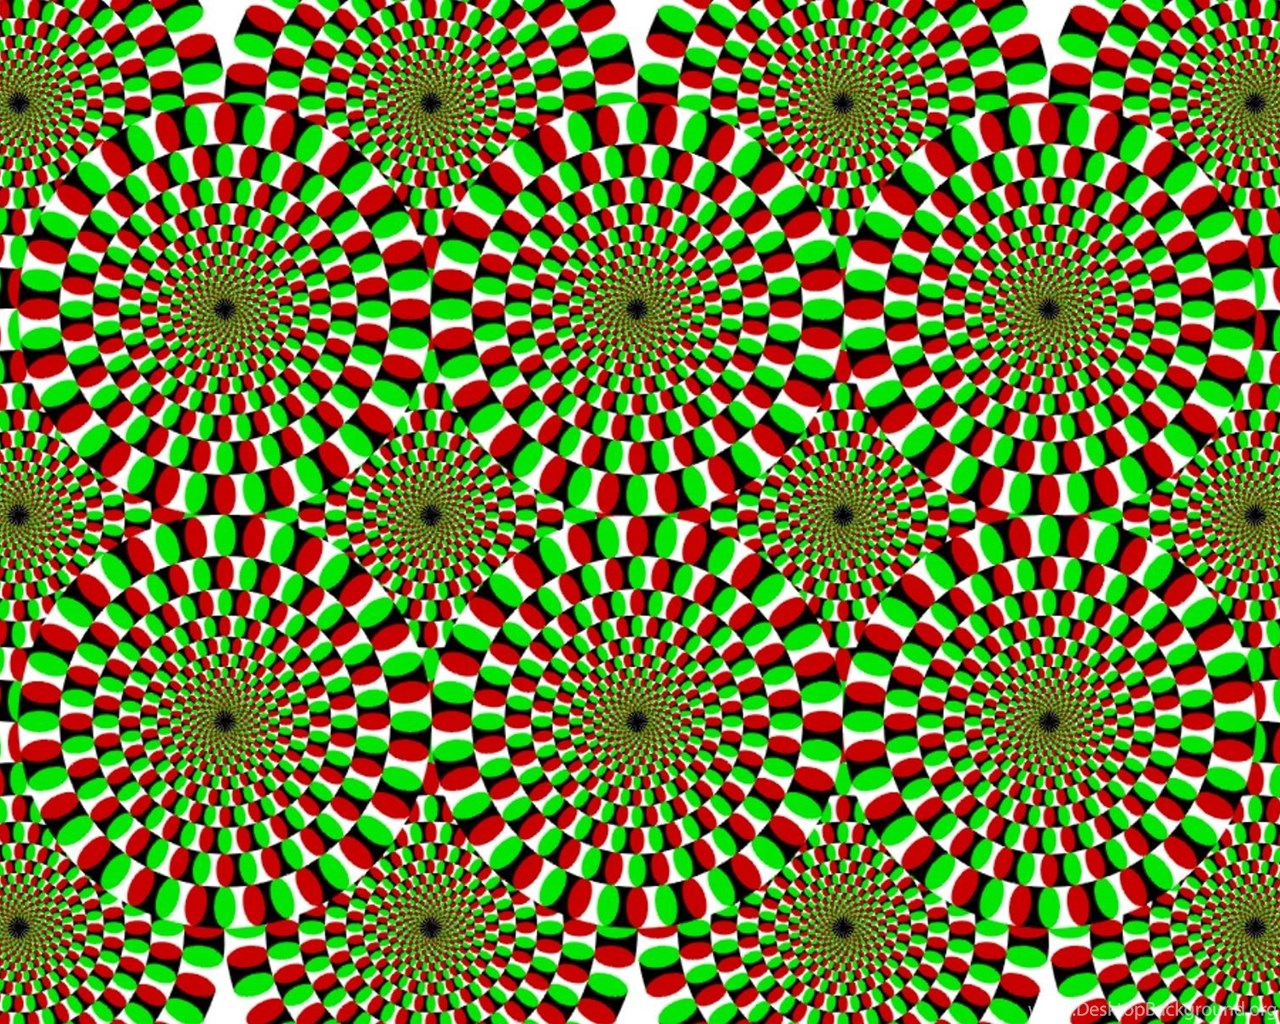 Движущиеся картинки для глаз. Акиоши Китаока иллюзия. Оптическая иллюзия Акиоши Китаока. Иллюзия Акиоши Китаока вращающийся змей. Психиатр Акиоши Китаока.